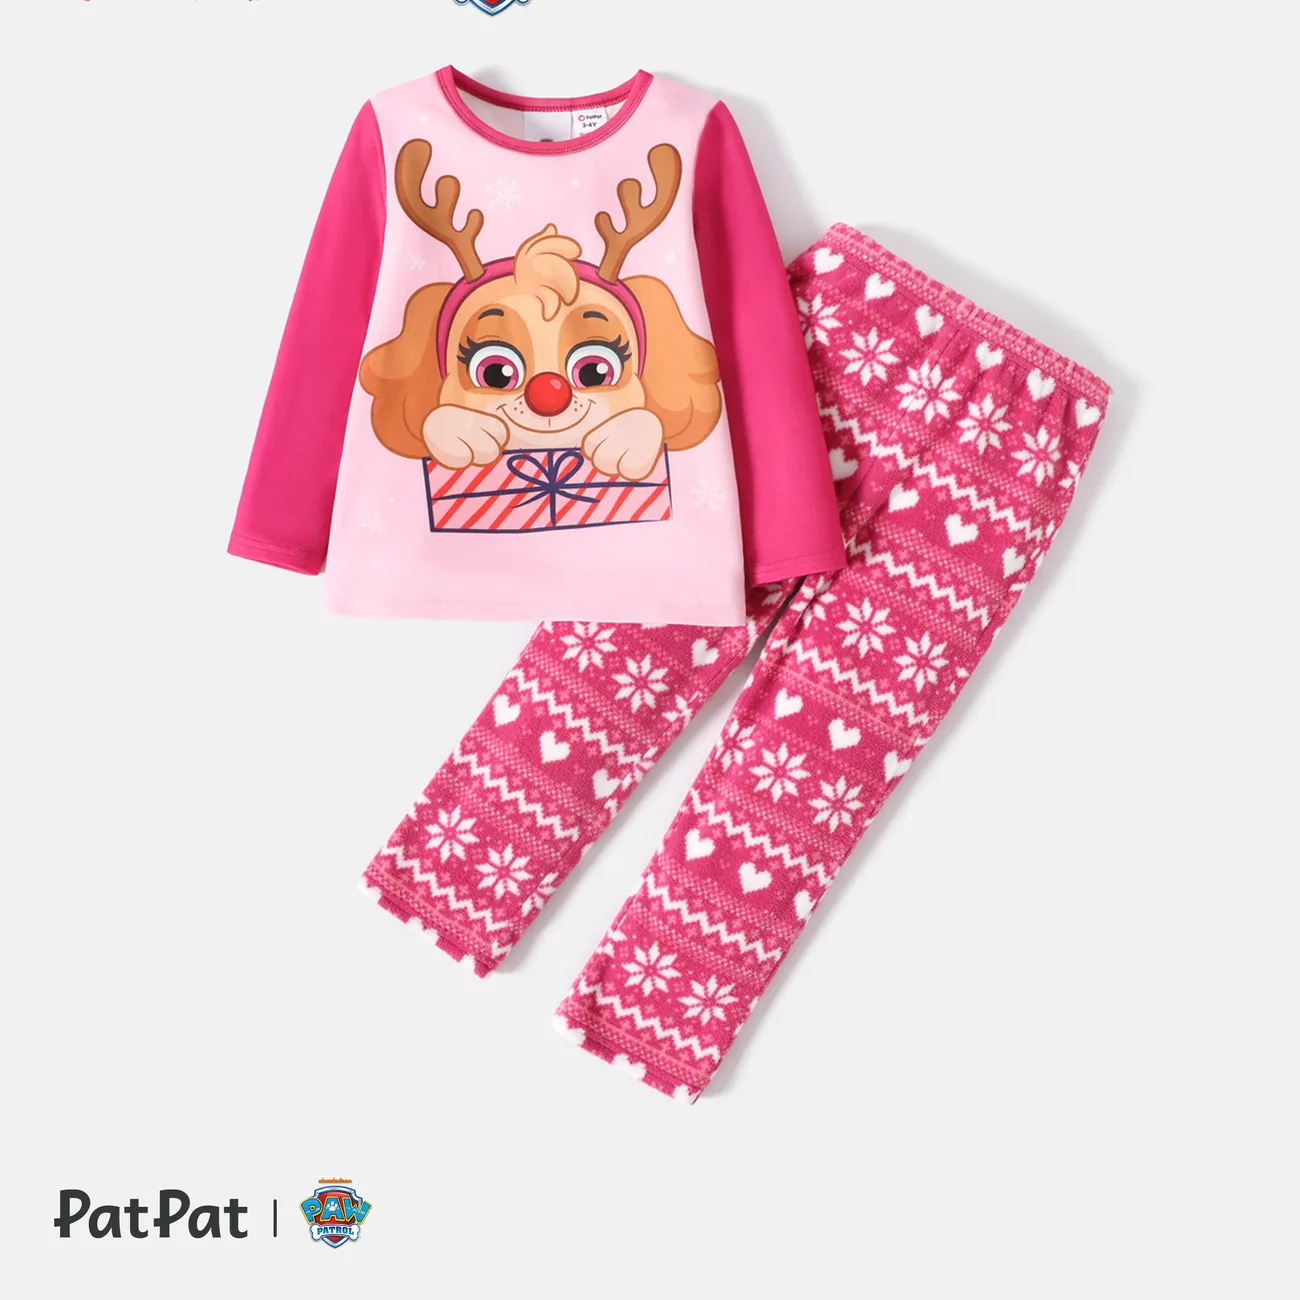 Patrulla de cachorros 2 unidades Niño pequeño Unisex Infantil Perro conjuntos de camiseta Rosa caliente big image 1